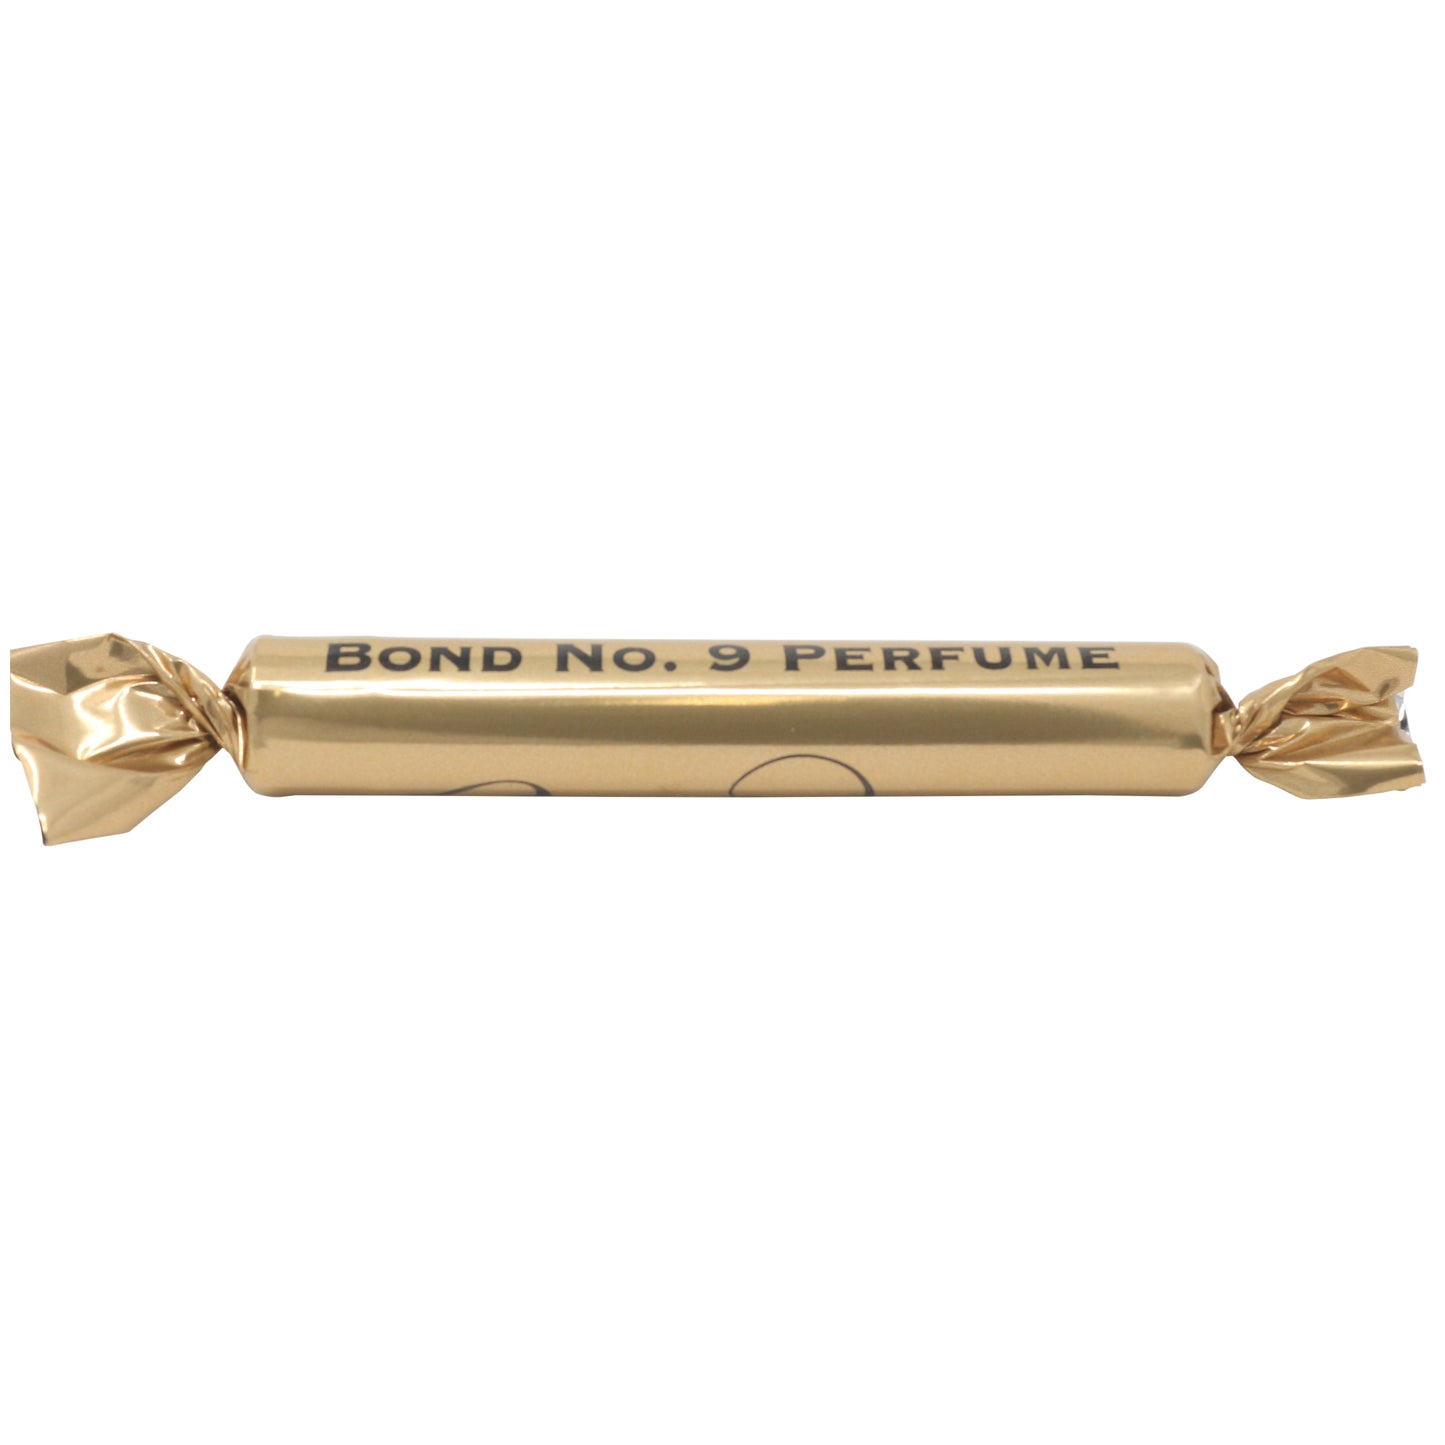 Bond No. 9 Bond No. 9 Perfume 1.7ml 0.054 Fl. oz. amostra oficial de perfume